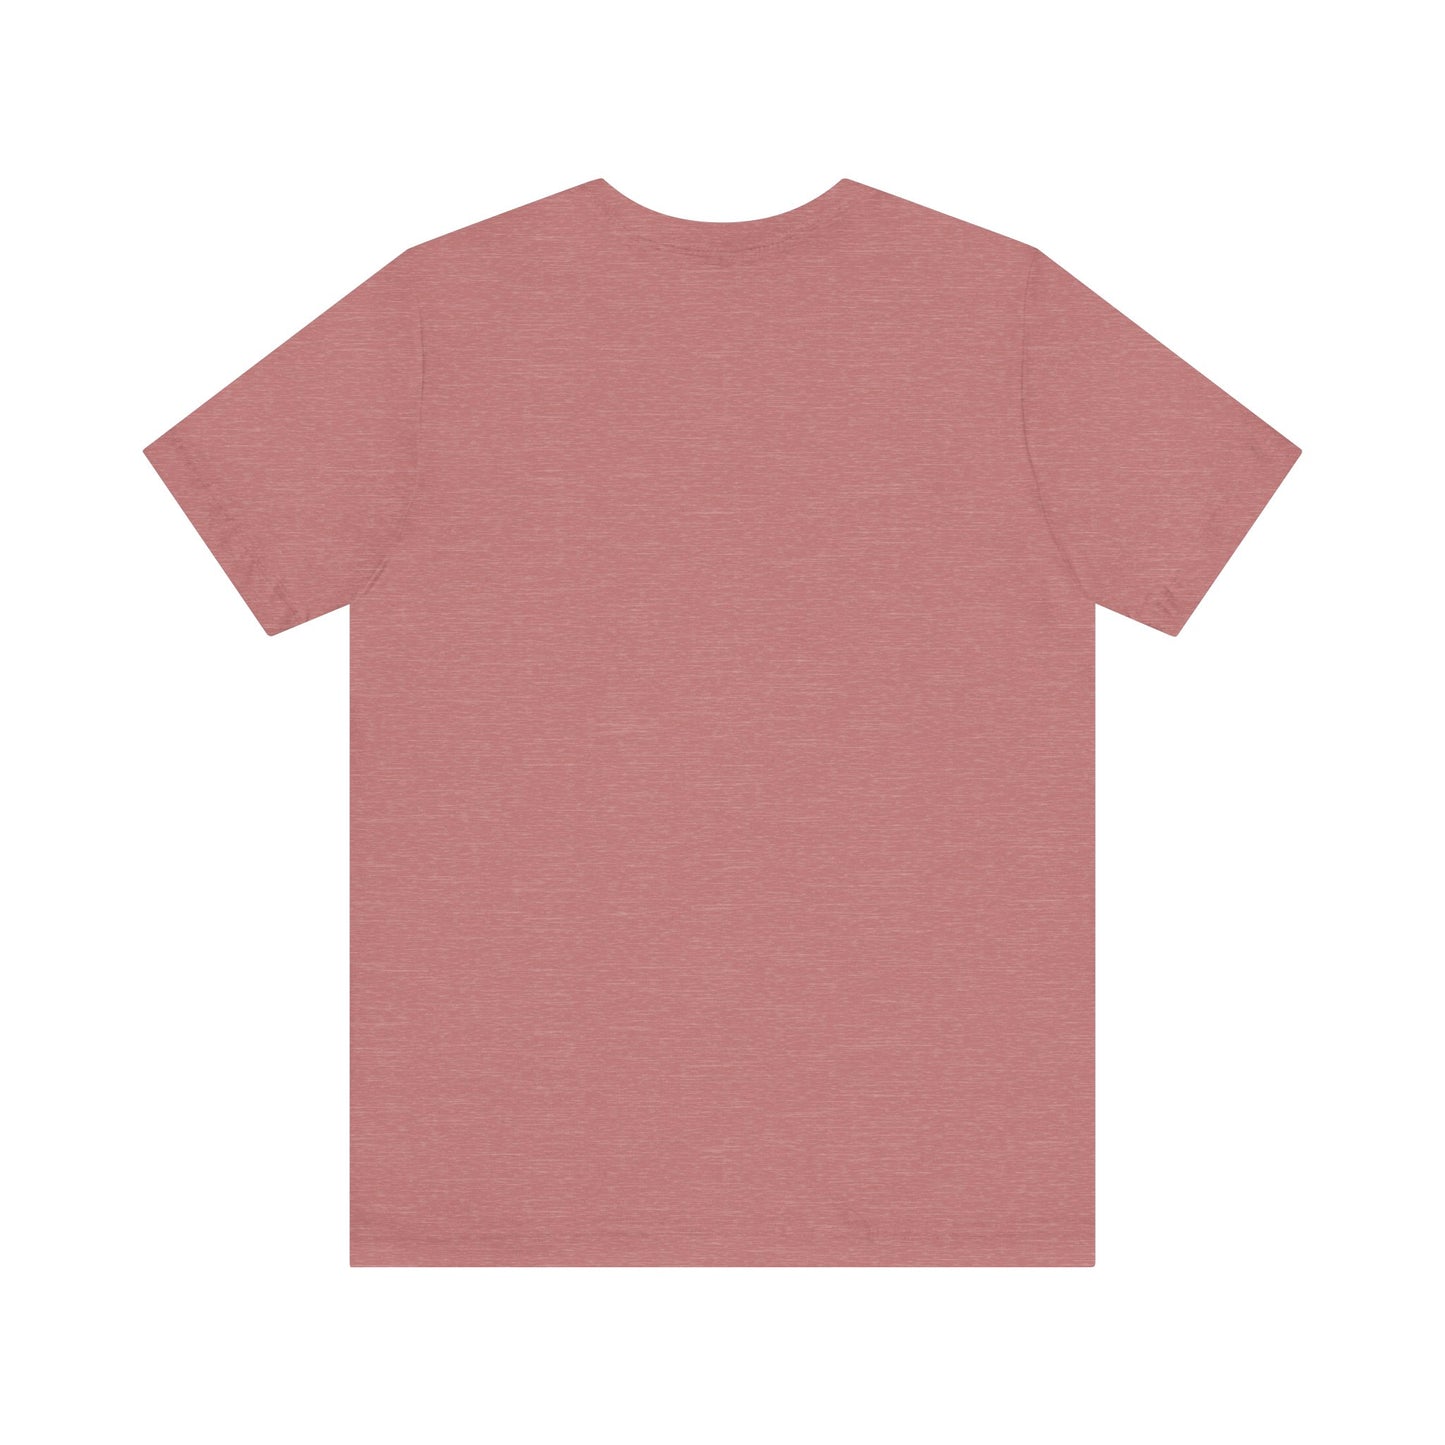 Kuscheliges Lieblings-T-Shirt: Unisex Jersey Tee mit süßen Haustiermotiven, Freizeit T-Shirt Haustier, T-Shirt mit Haustier, Kleidung